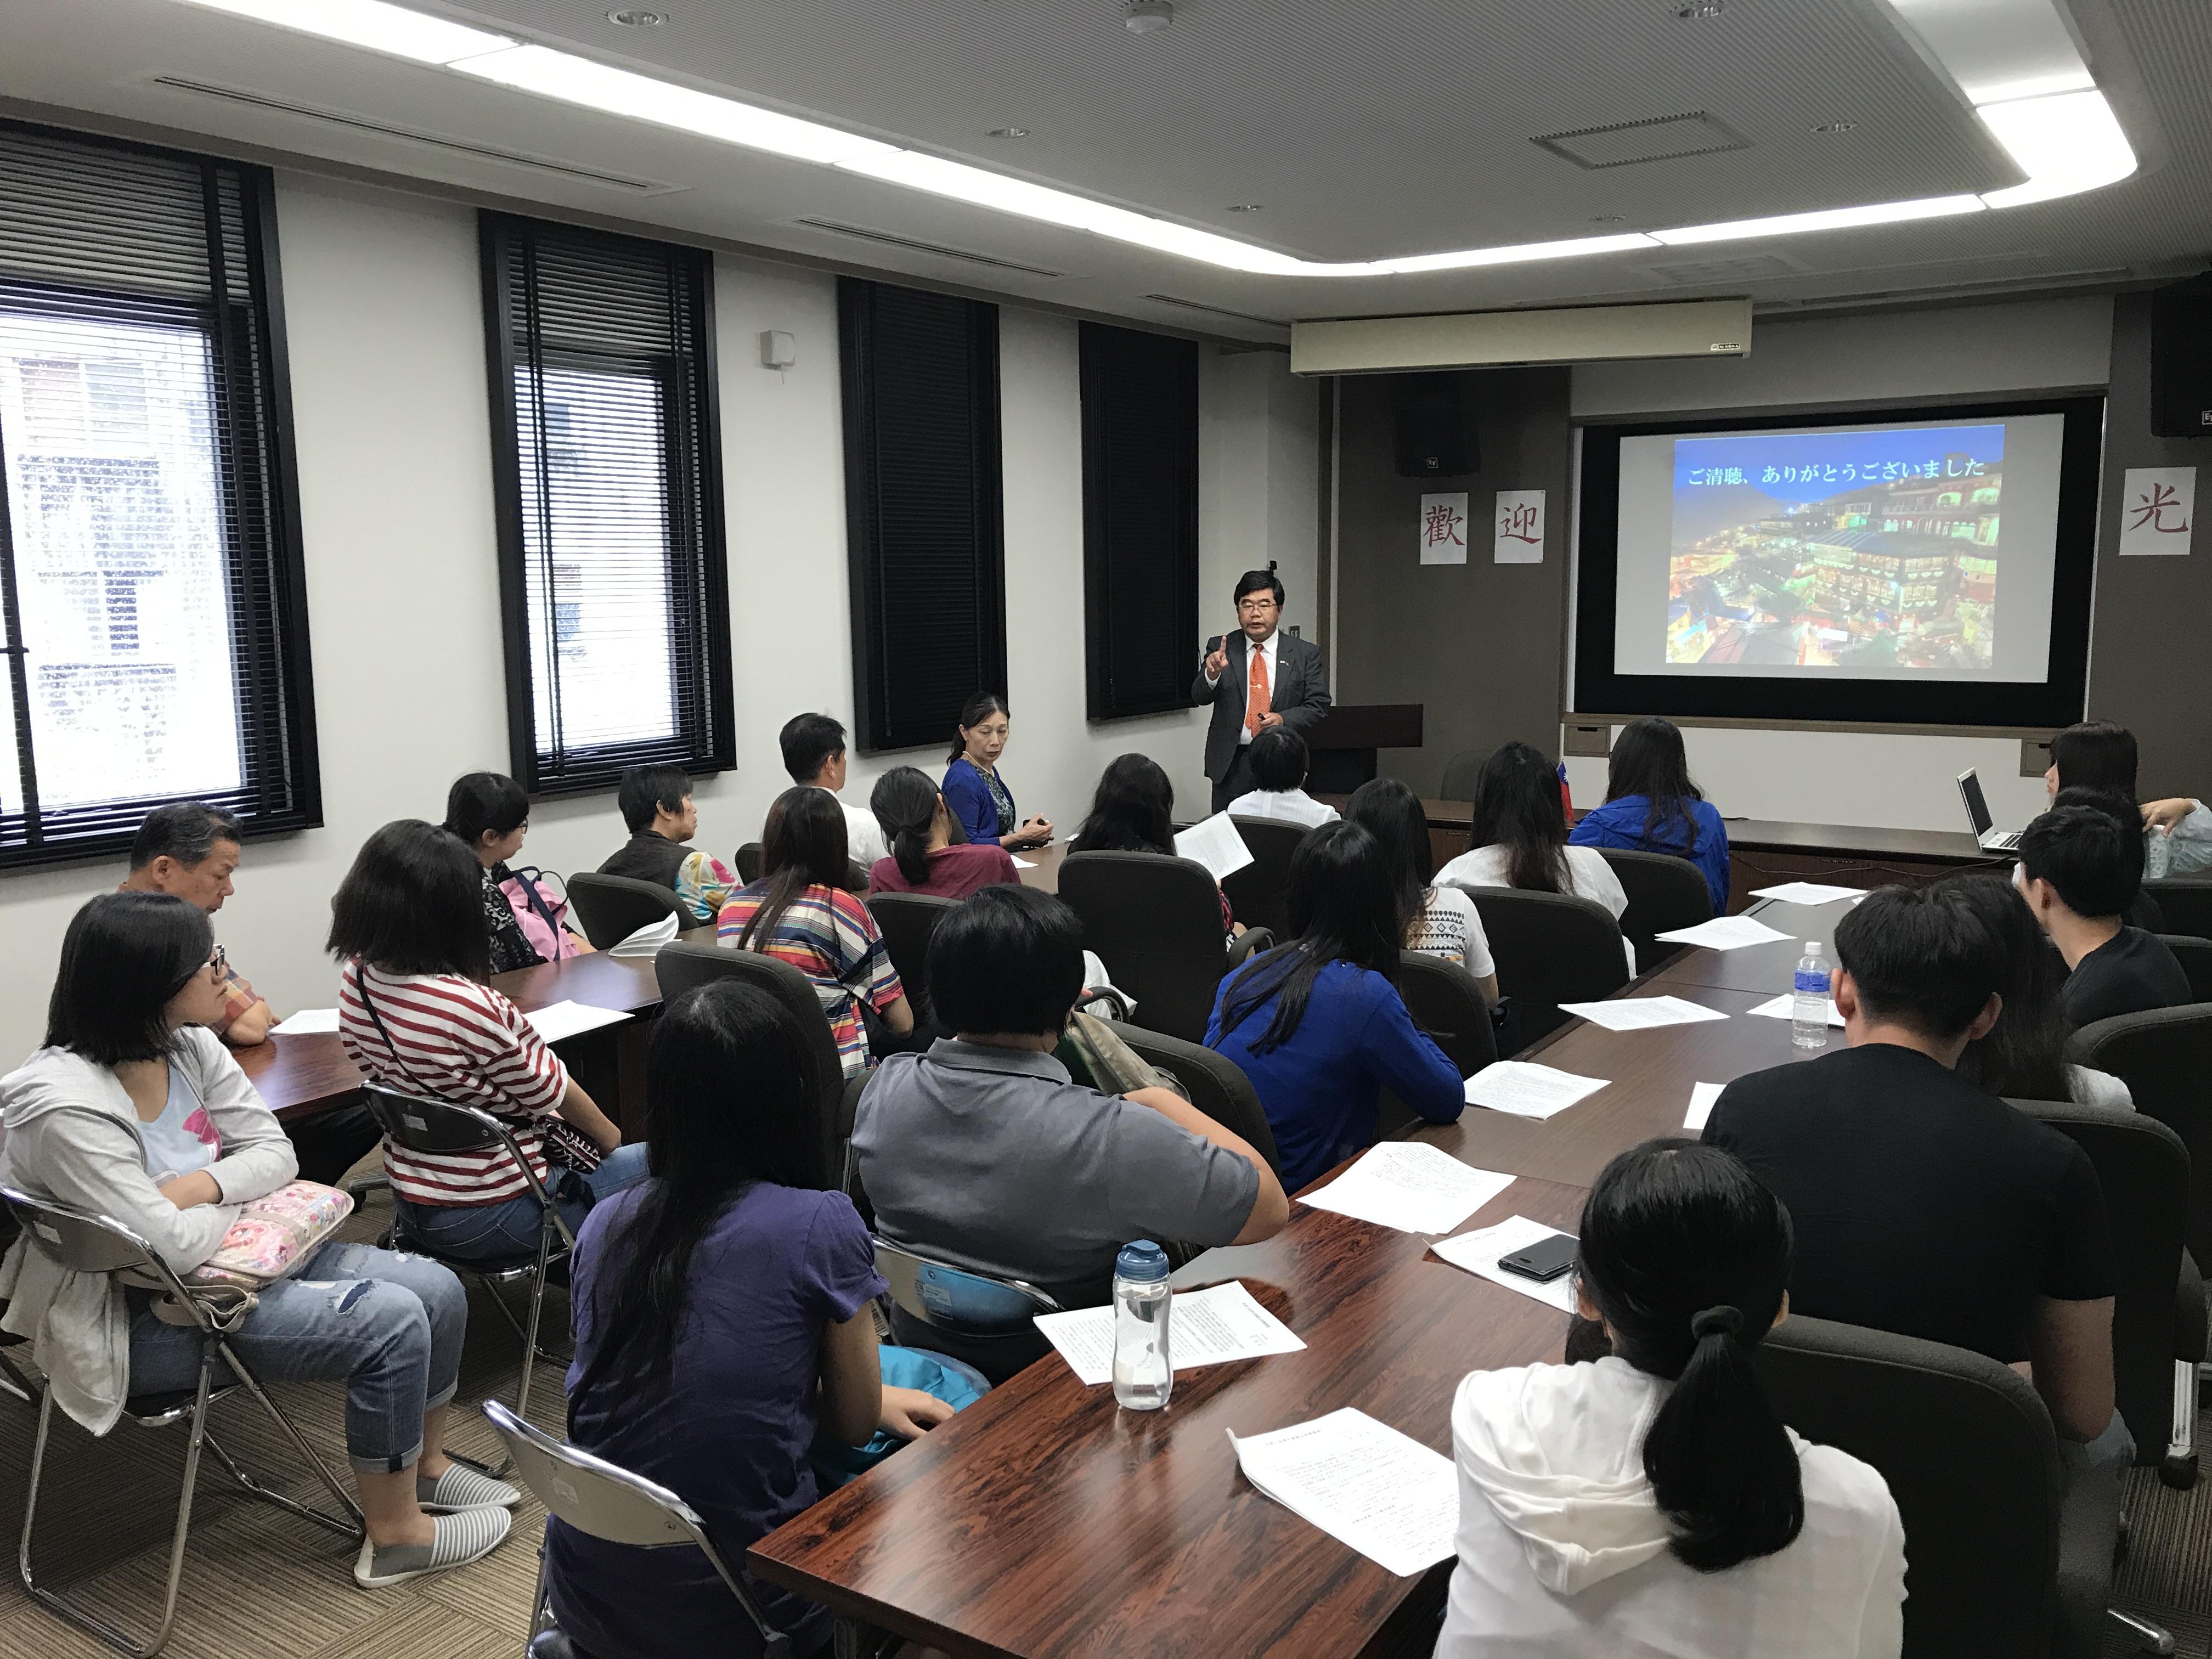 7月4日、当弁事処のお招きにより文化大学等一行計22名が参加した。当弁事処で戎総領事が「九州と台湾の強固な信頼関係」を題として講演会を行った。